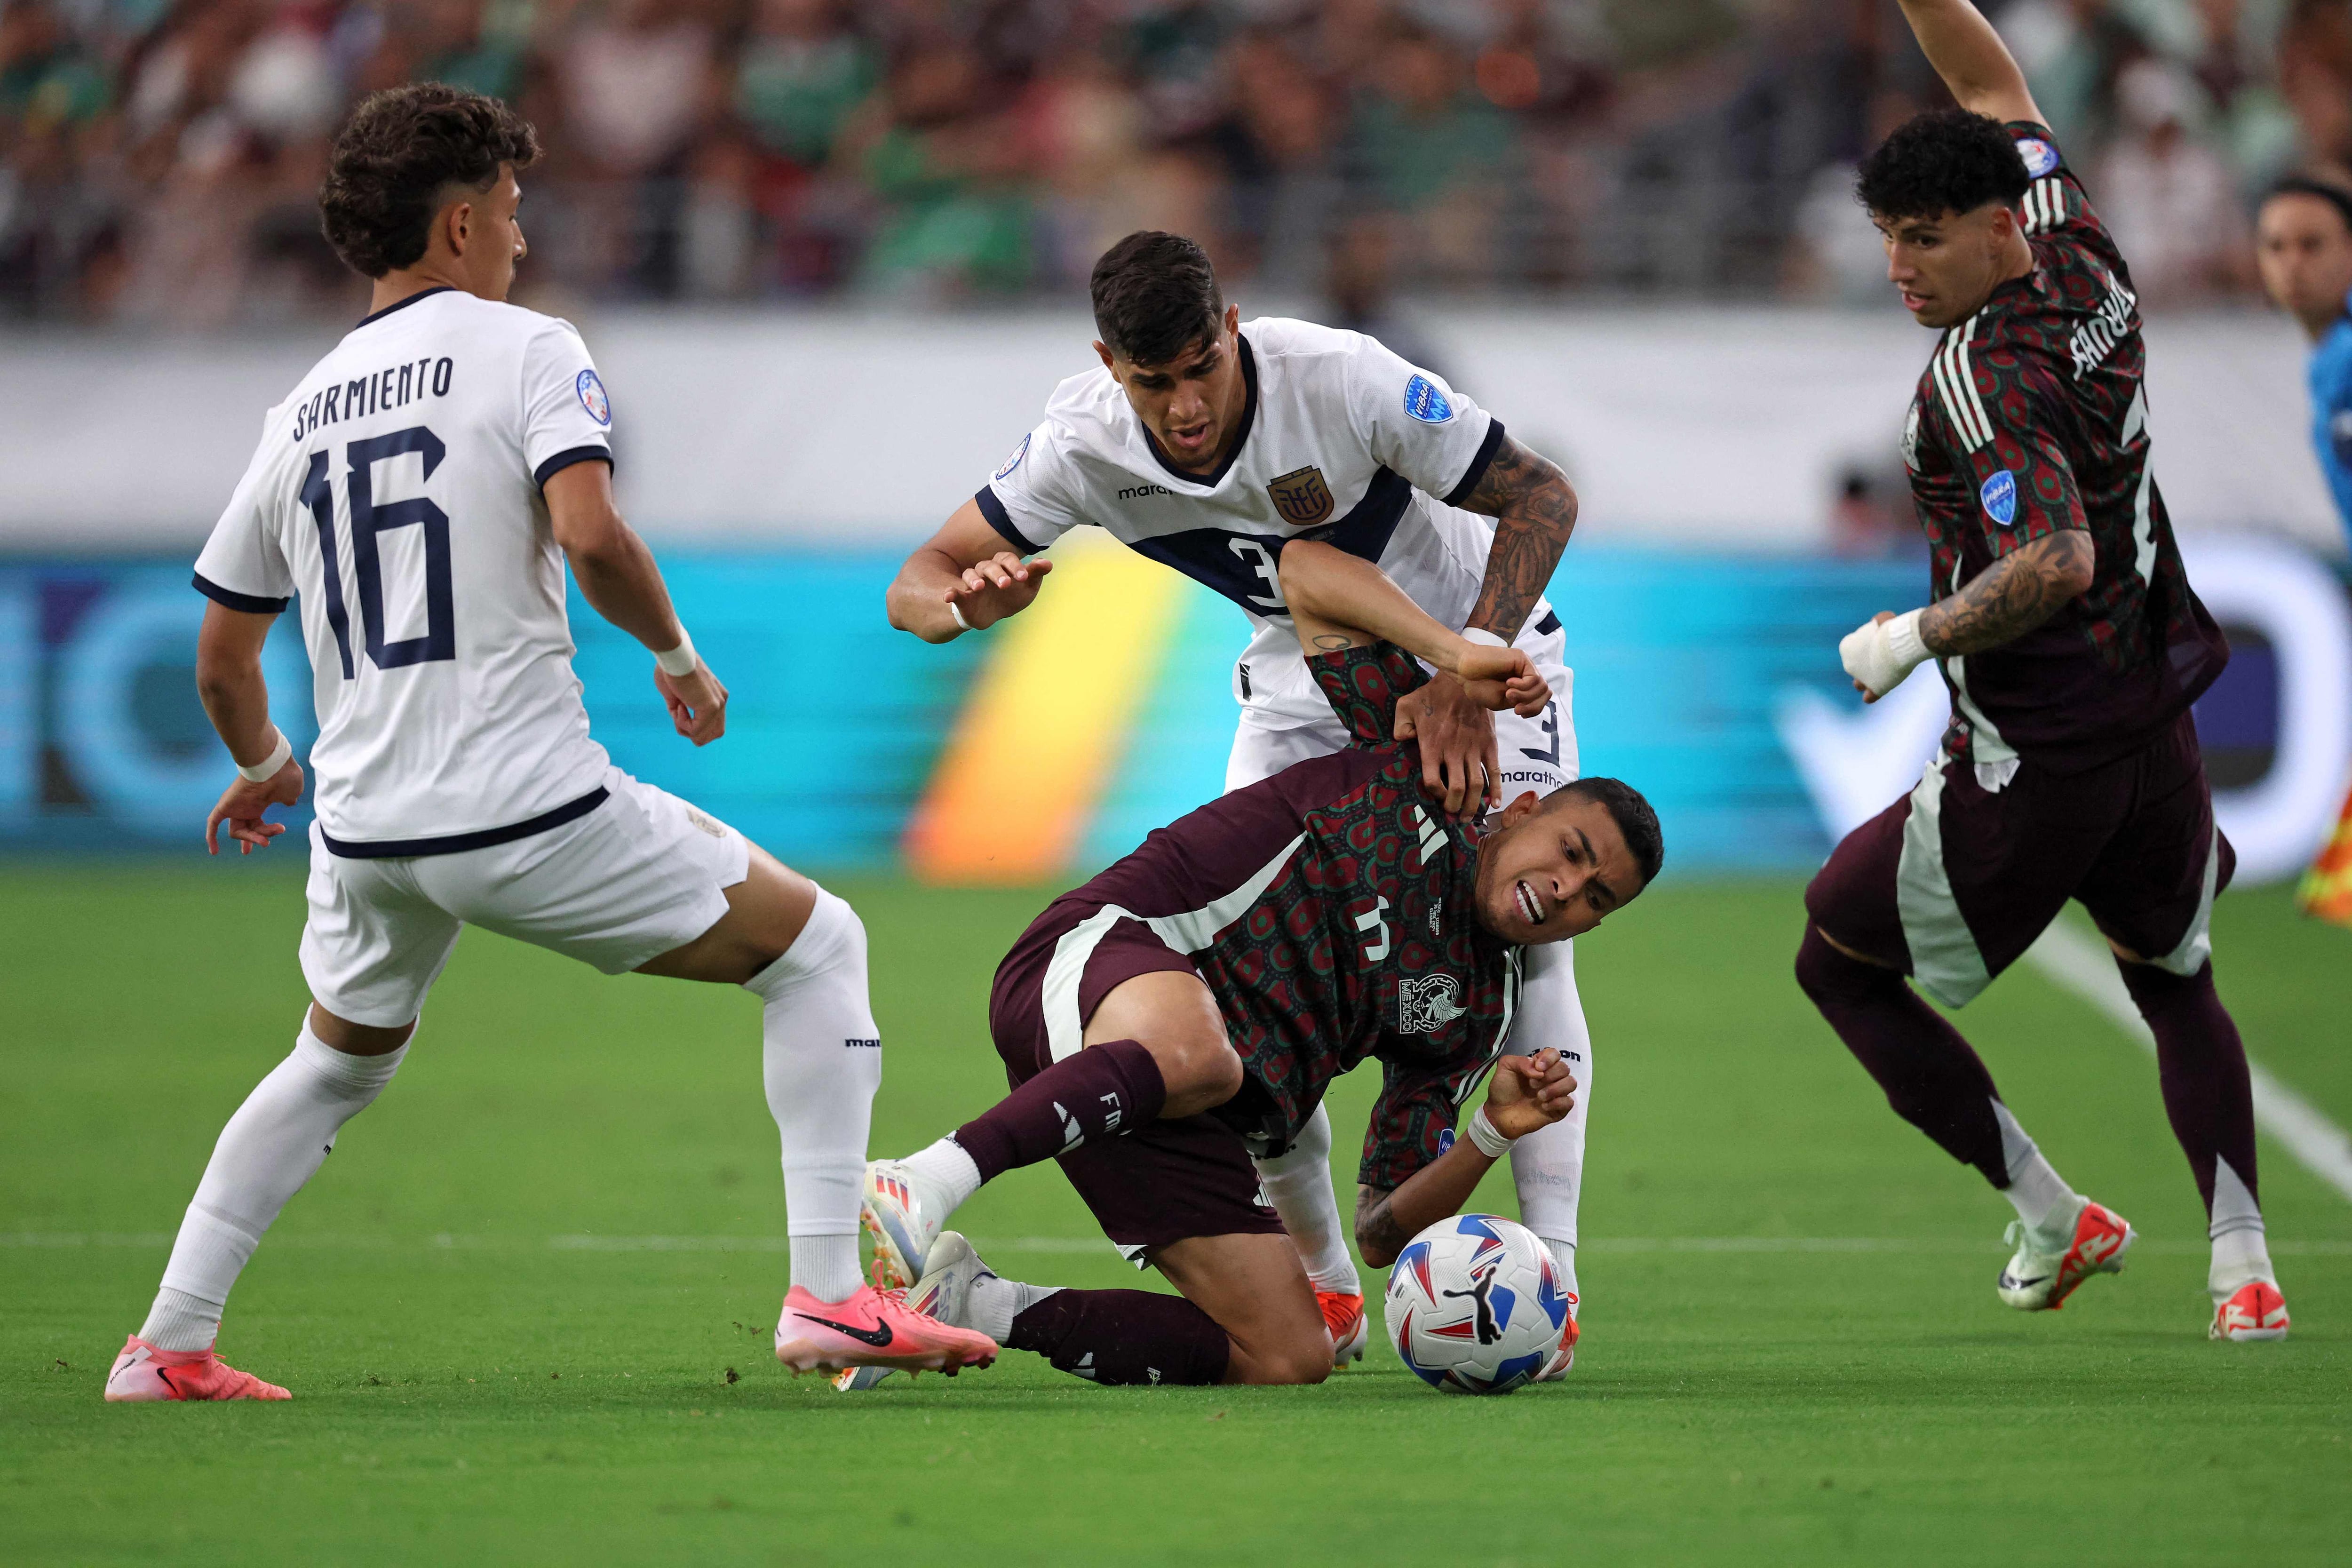 México quedó eliminado en la Copa América al empatar 0-0 contra Ecuador. Orbelin Pineda pelea por el balón contra Jeremy Sarmiento y Piero Hincapié.